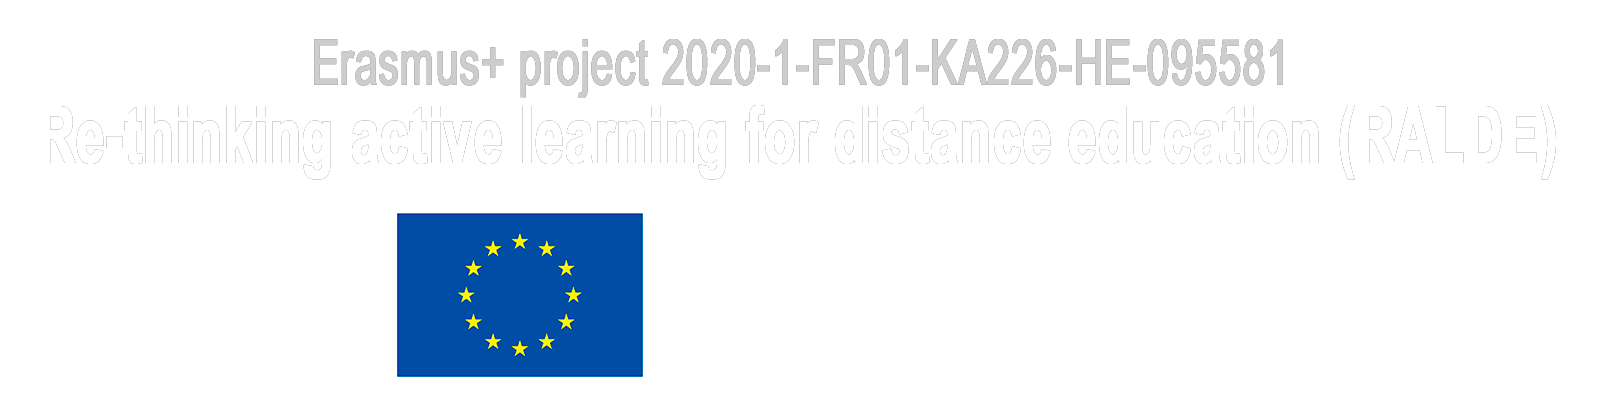 2020-1-FR01-KA226-HE-095581